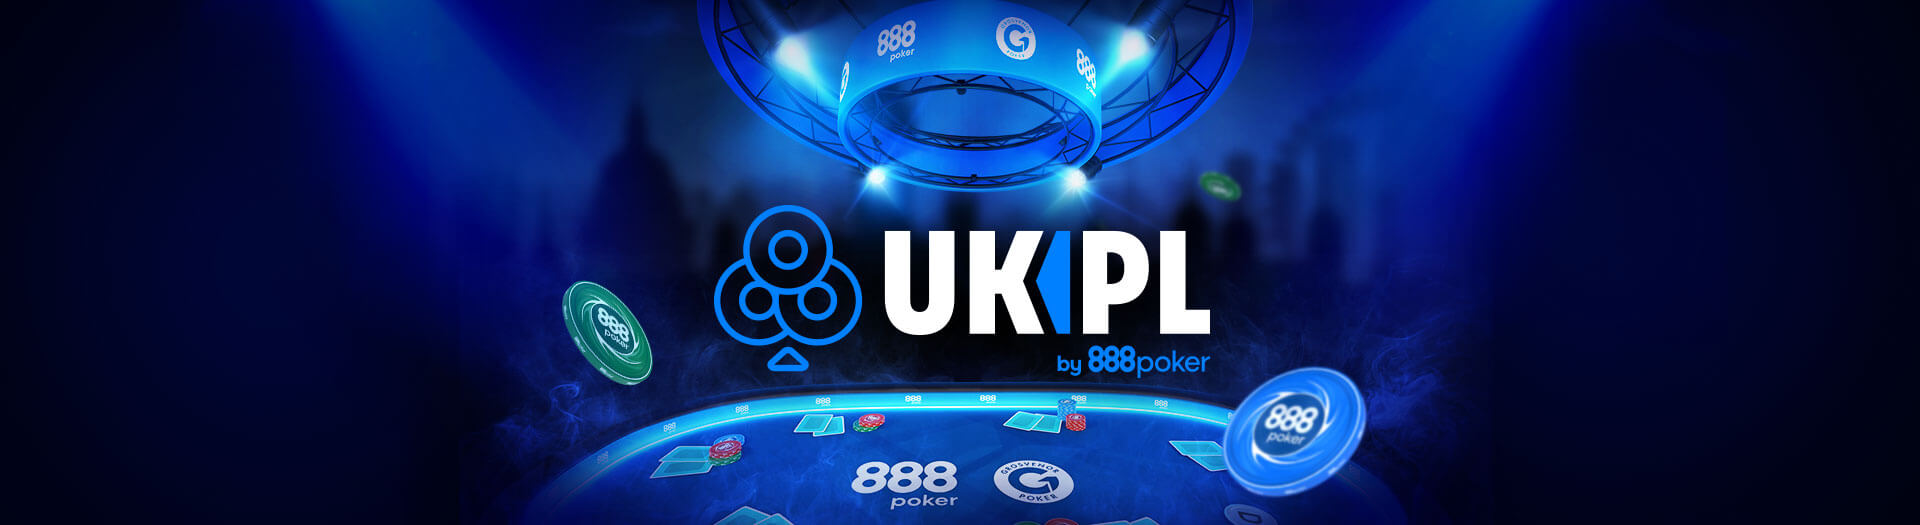 UK Poker League 888poker